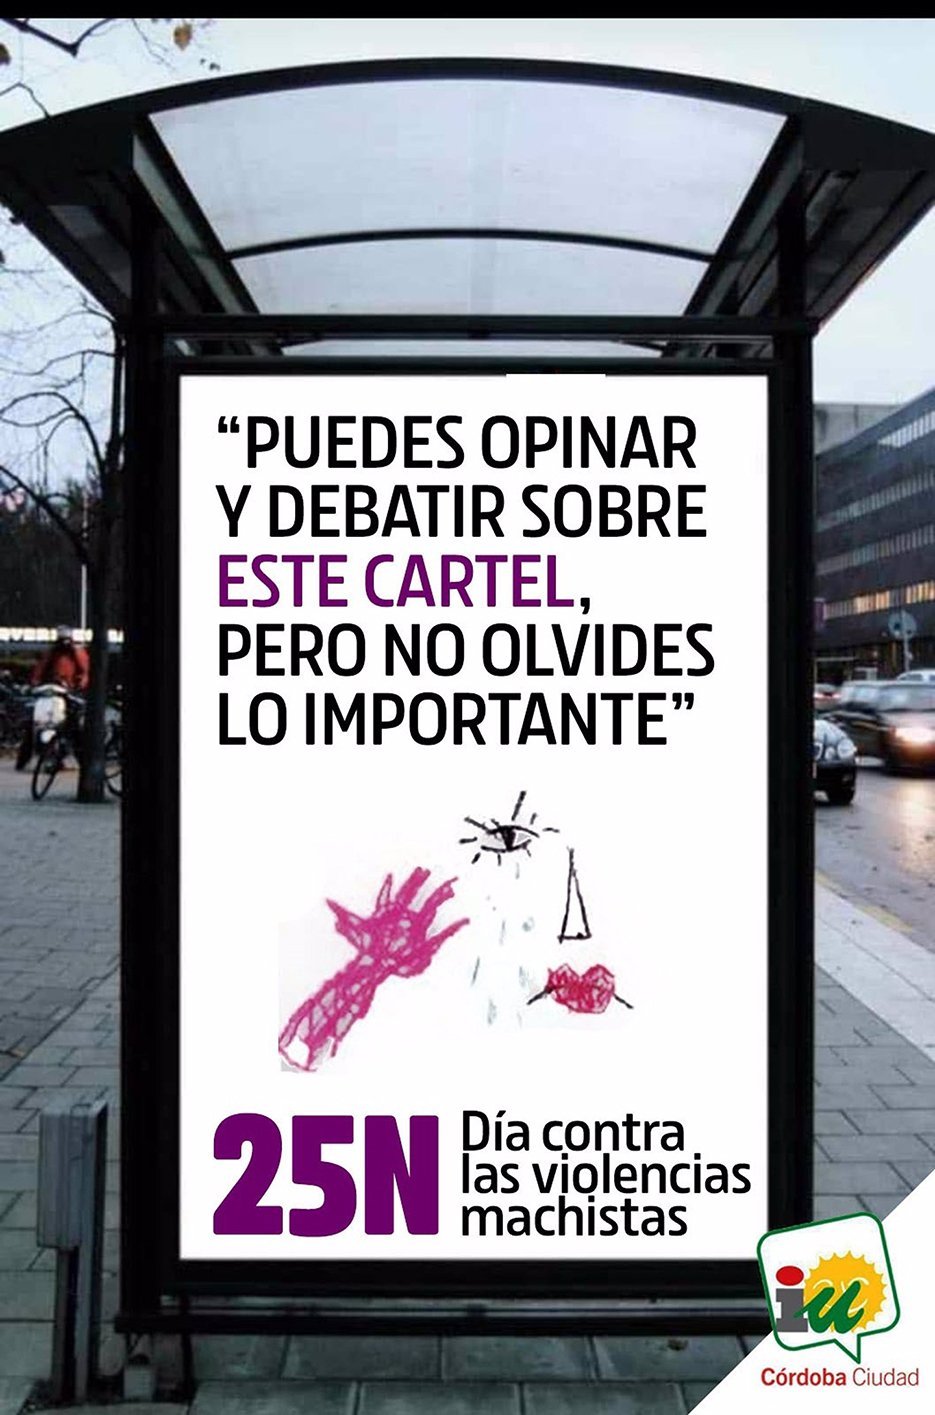 12/11/2020 Imagen promocional de IU contra la violencia machista..

IU Córdoba ha pedido este jueves, a través de las redes sociales, que no se olvide que las mujeres son víctimas de la violencia machista y que, de hecho, 